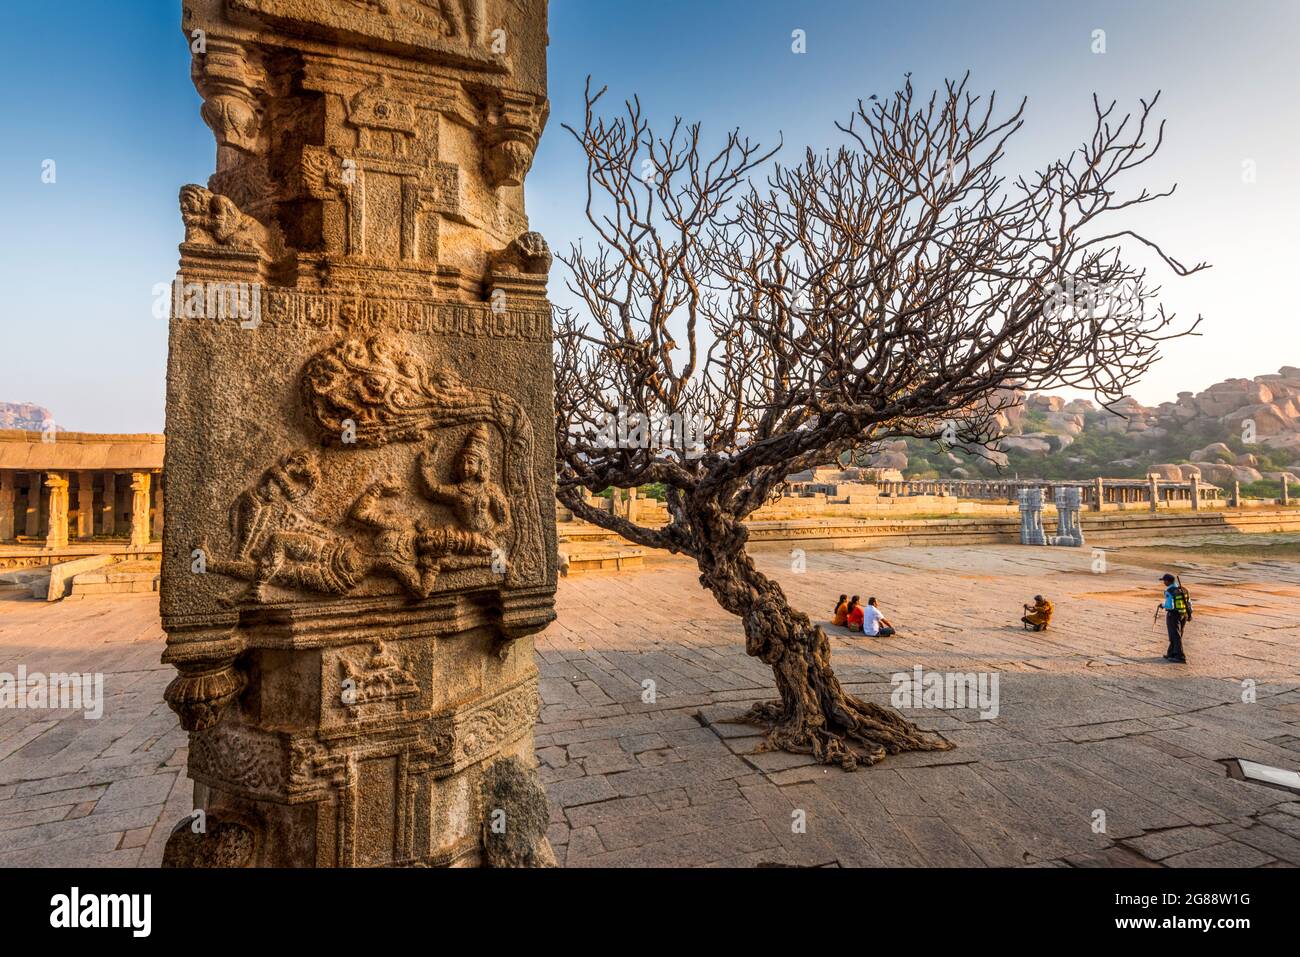 Hampi, Karnataka, India - 10 de enero de 2020: Templo Vijaya Vitthala. Bellamente tallada en una roca monolítica, un pedazo de la intrincada arquitectura marv Foto de stock